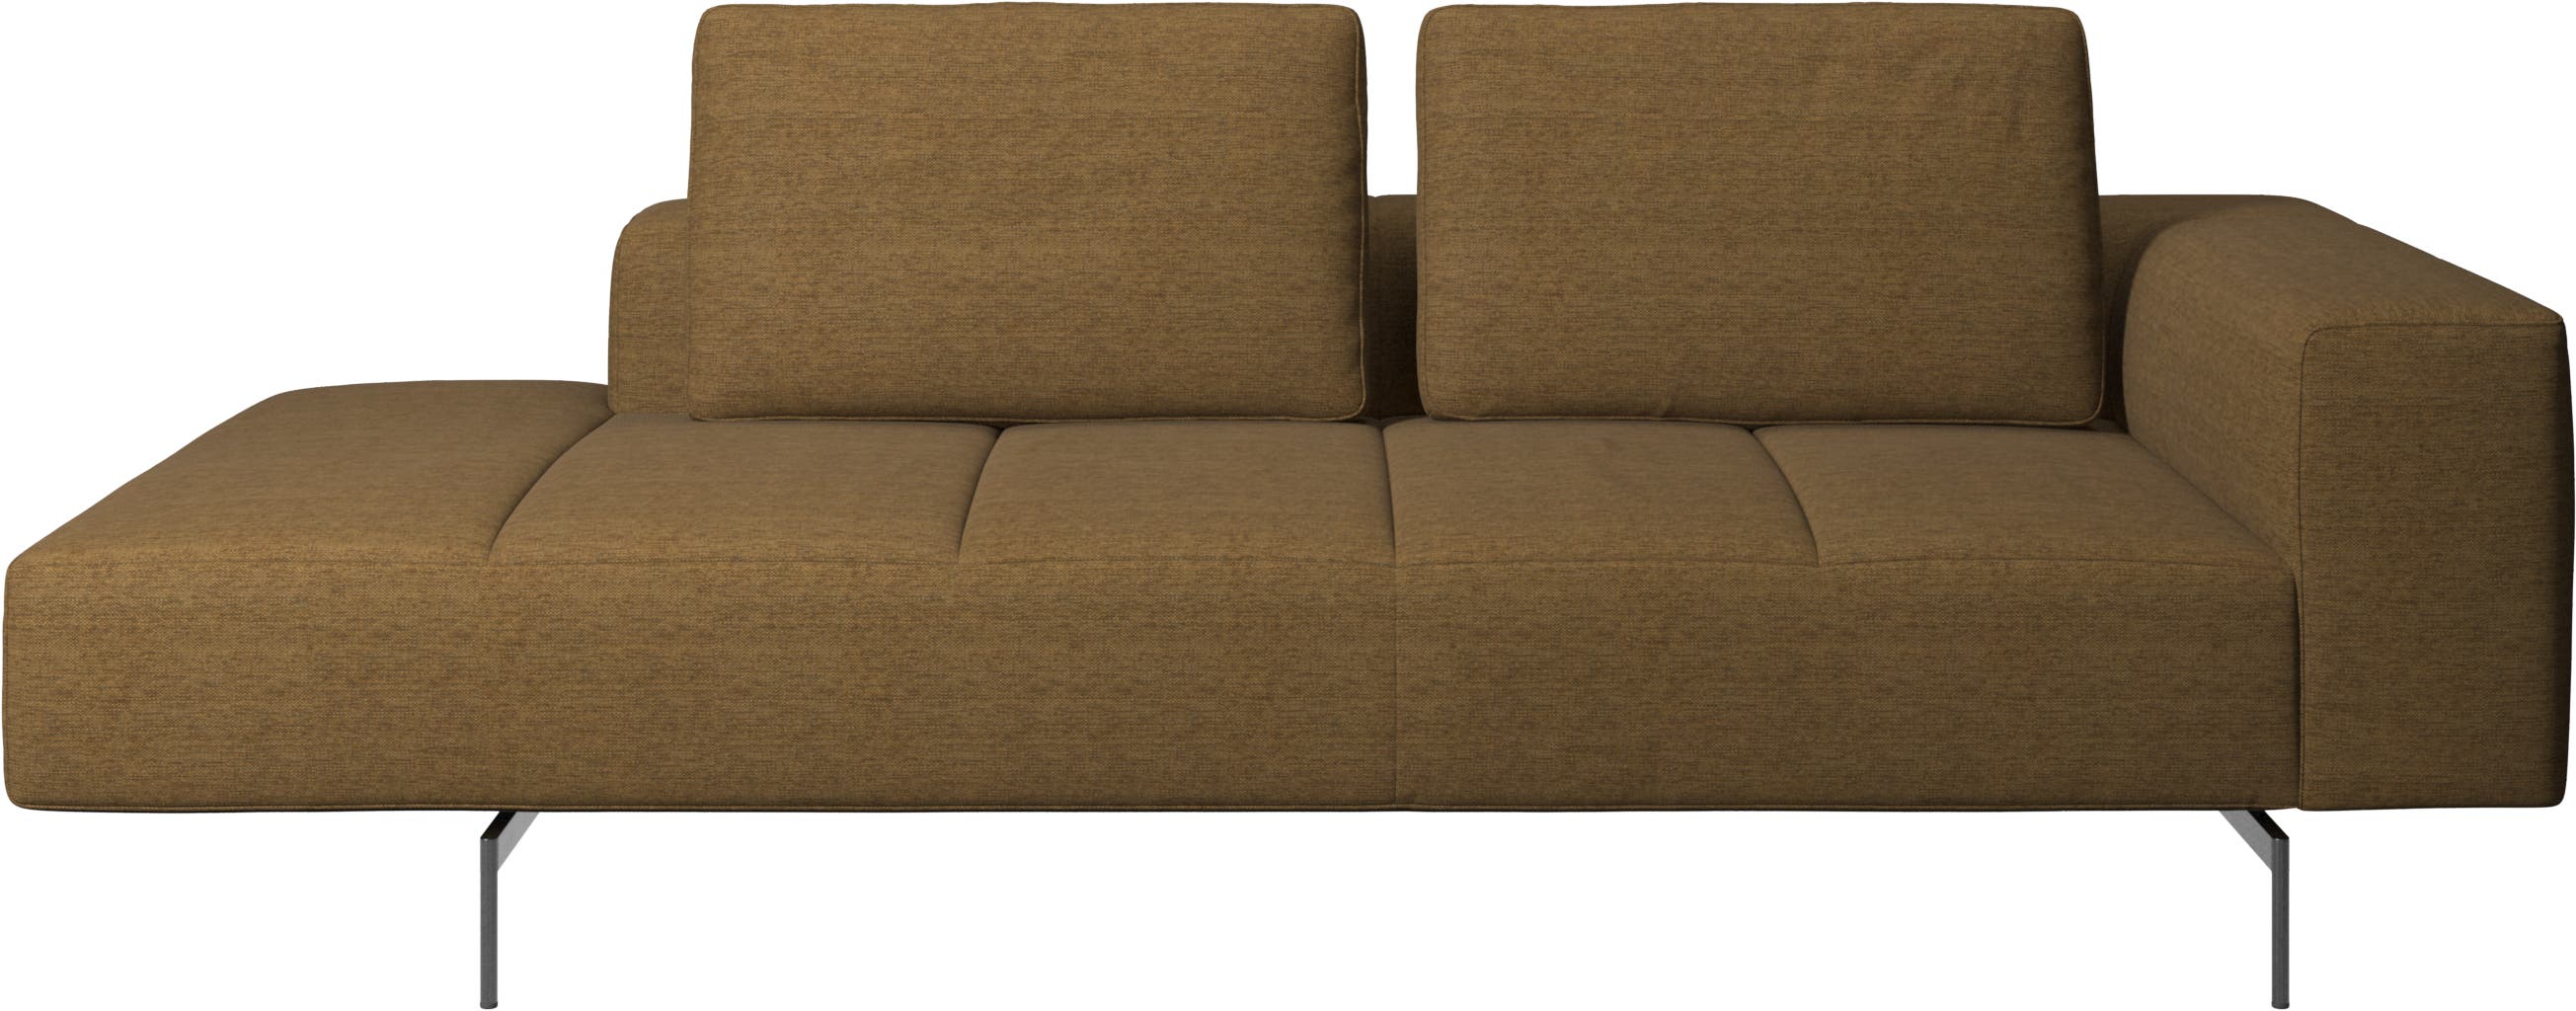 Amsterdam modul til sofa, armlæn højre, open end venstre